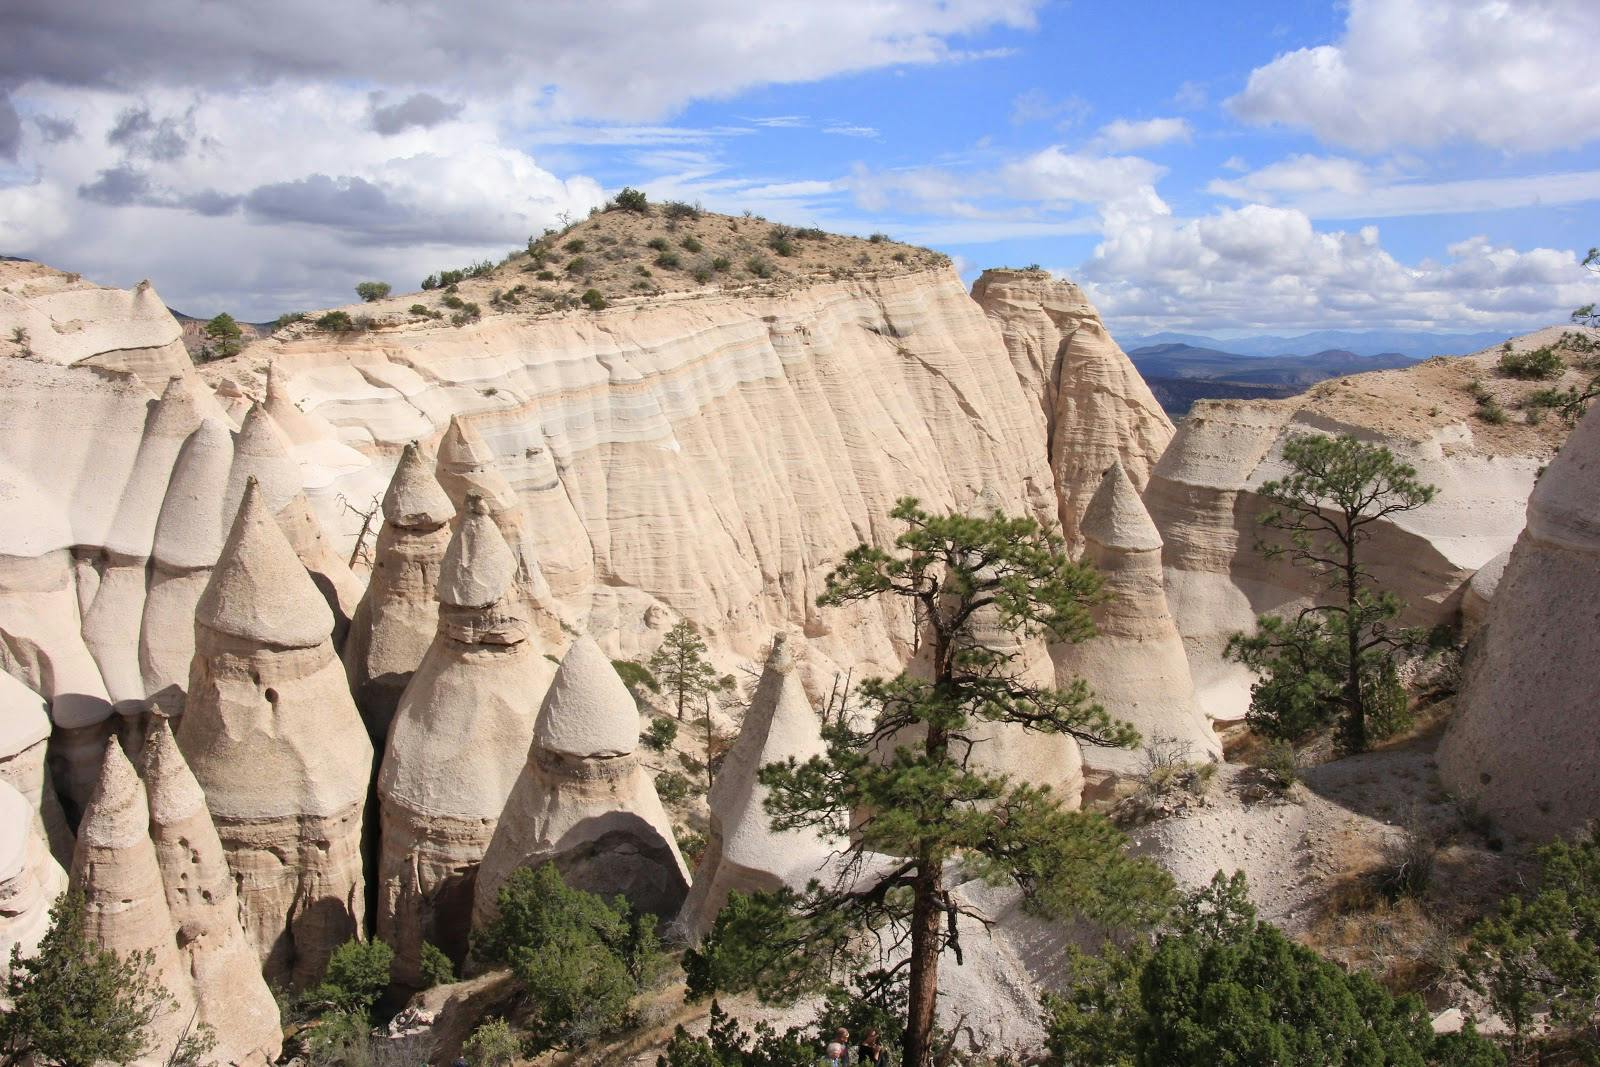 Image - Kasha-Katuwe Tent Rocks National Monument